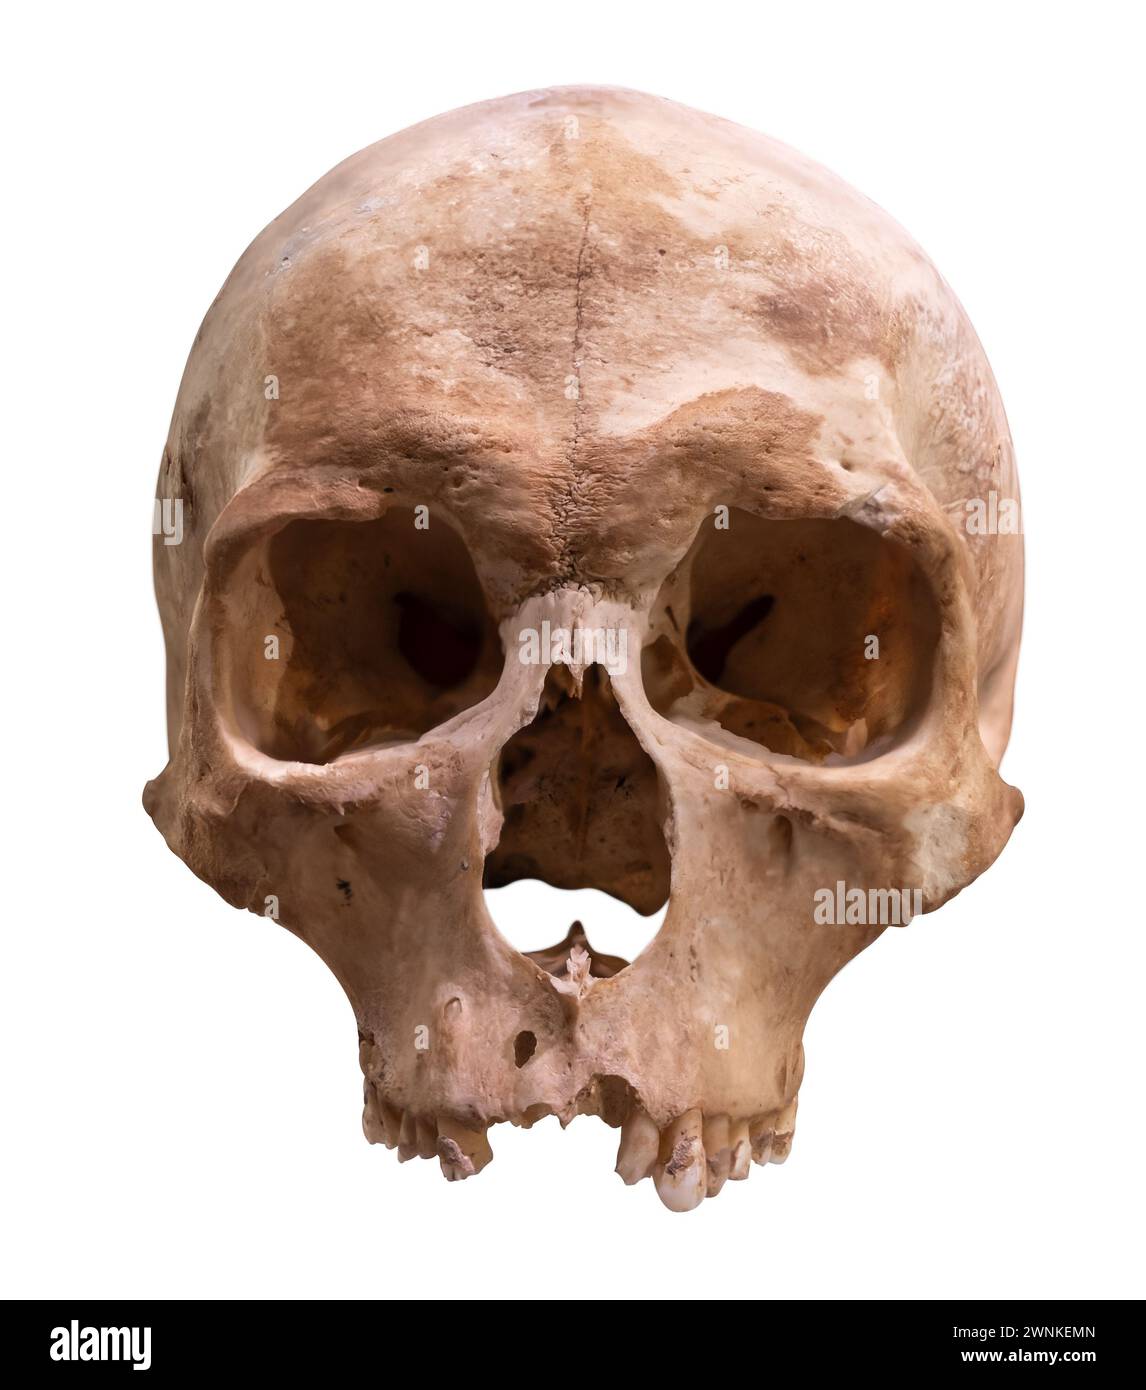 Un antico cranio umano conservato per la scienza medica, isolato su sfondo bianco Foto Stock